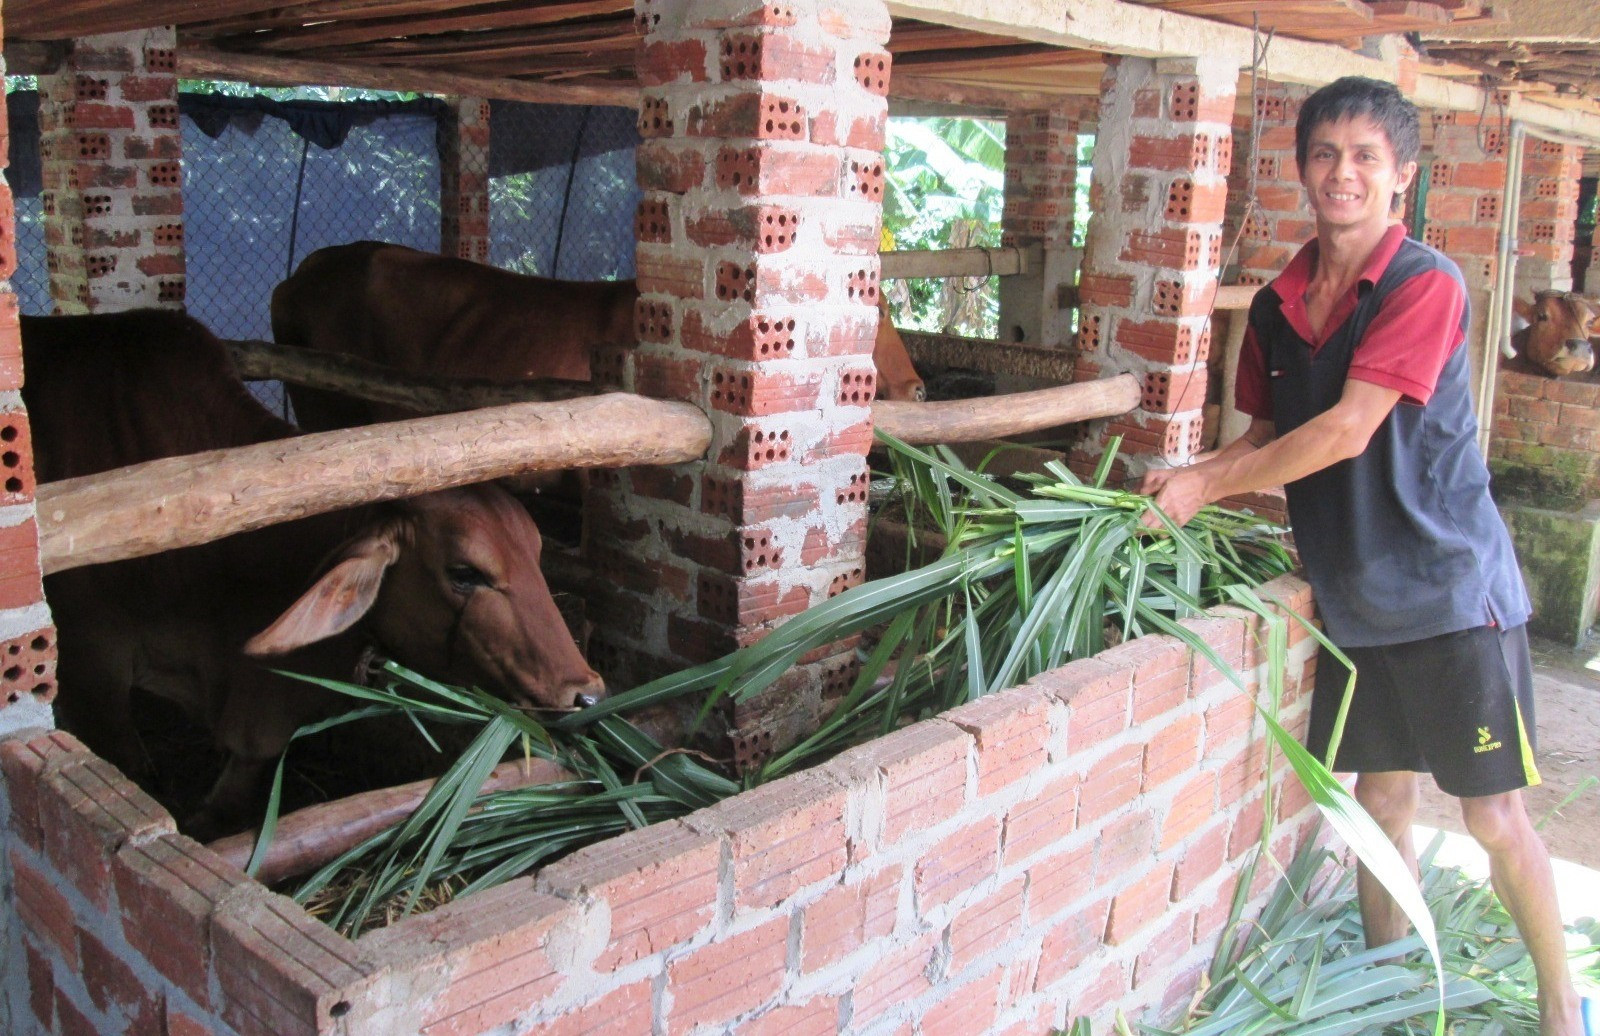 Thời gian qua các chủ gia trại chăn nuôi bò thâm canh ở Quế Sơn chú trọng tiêm phòng vắc xin lở mồm long móng nhằm hạn chế thiệt hại do dịch bệnh gây ra. Ảnh: M.L